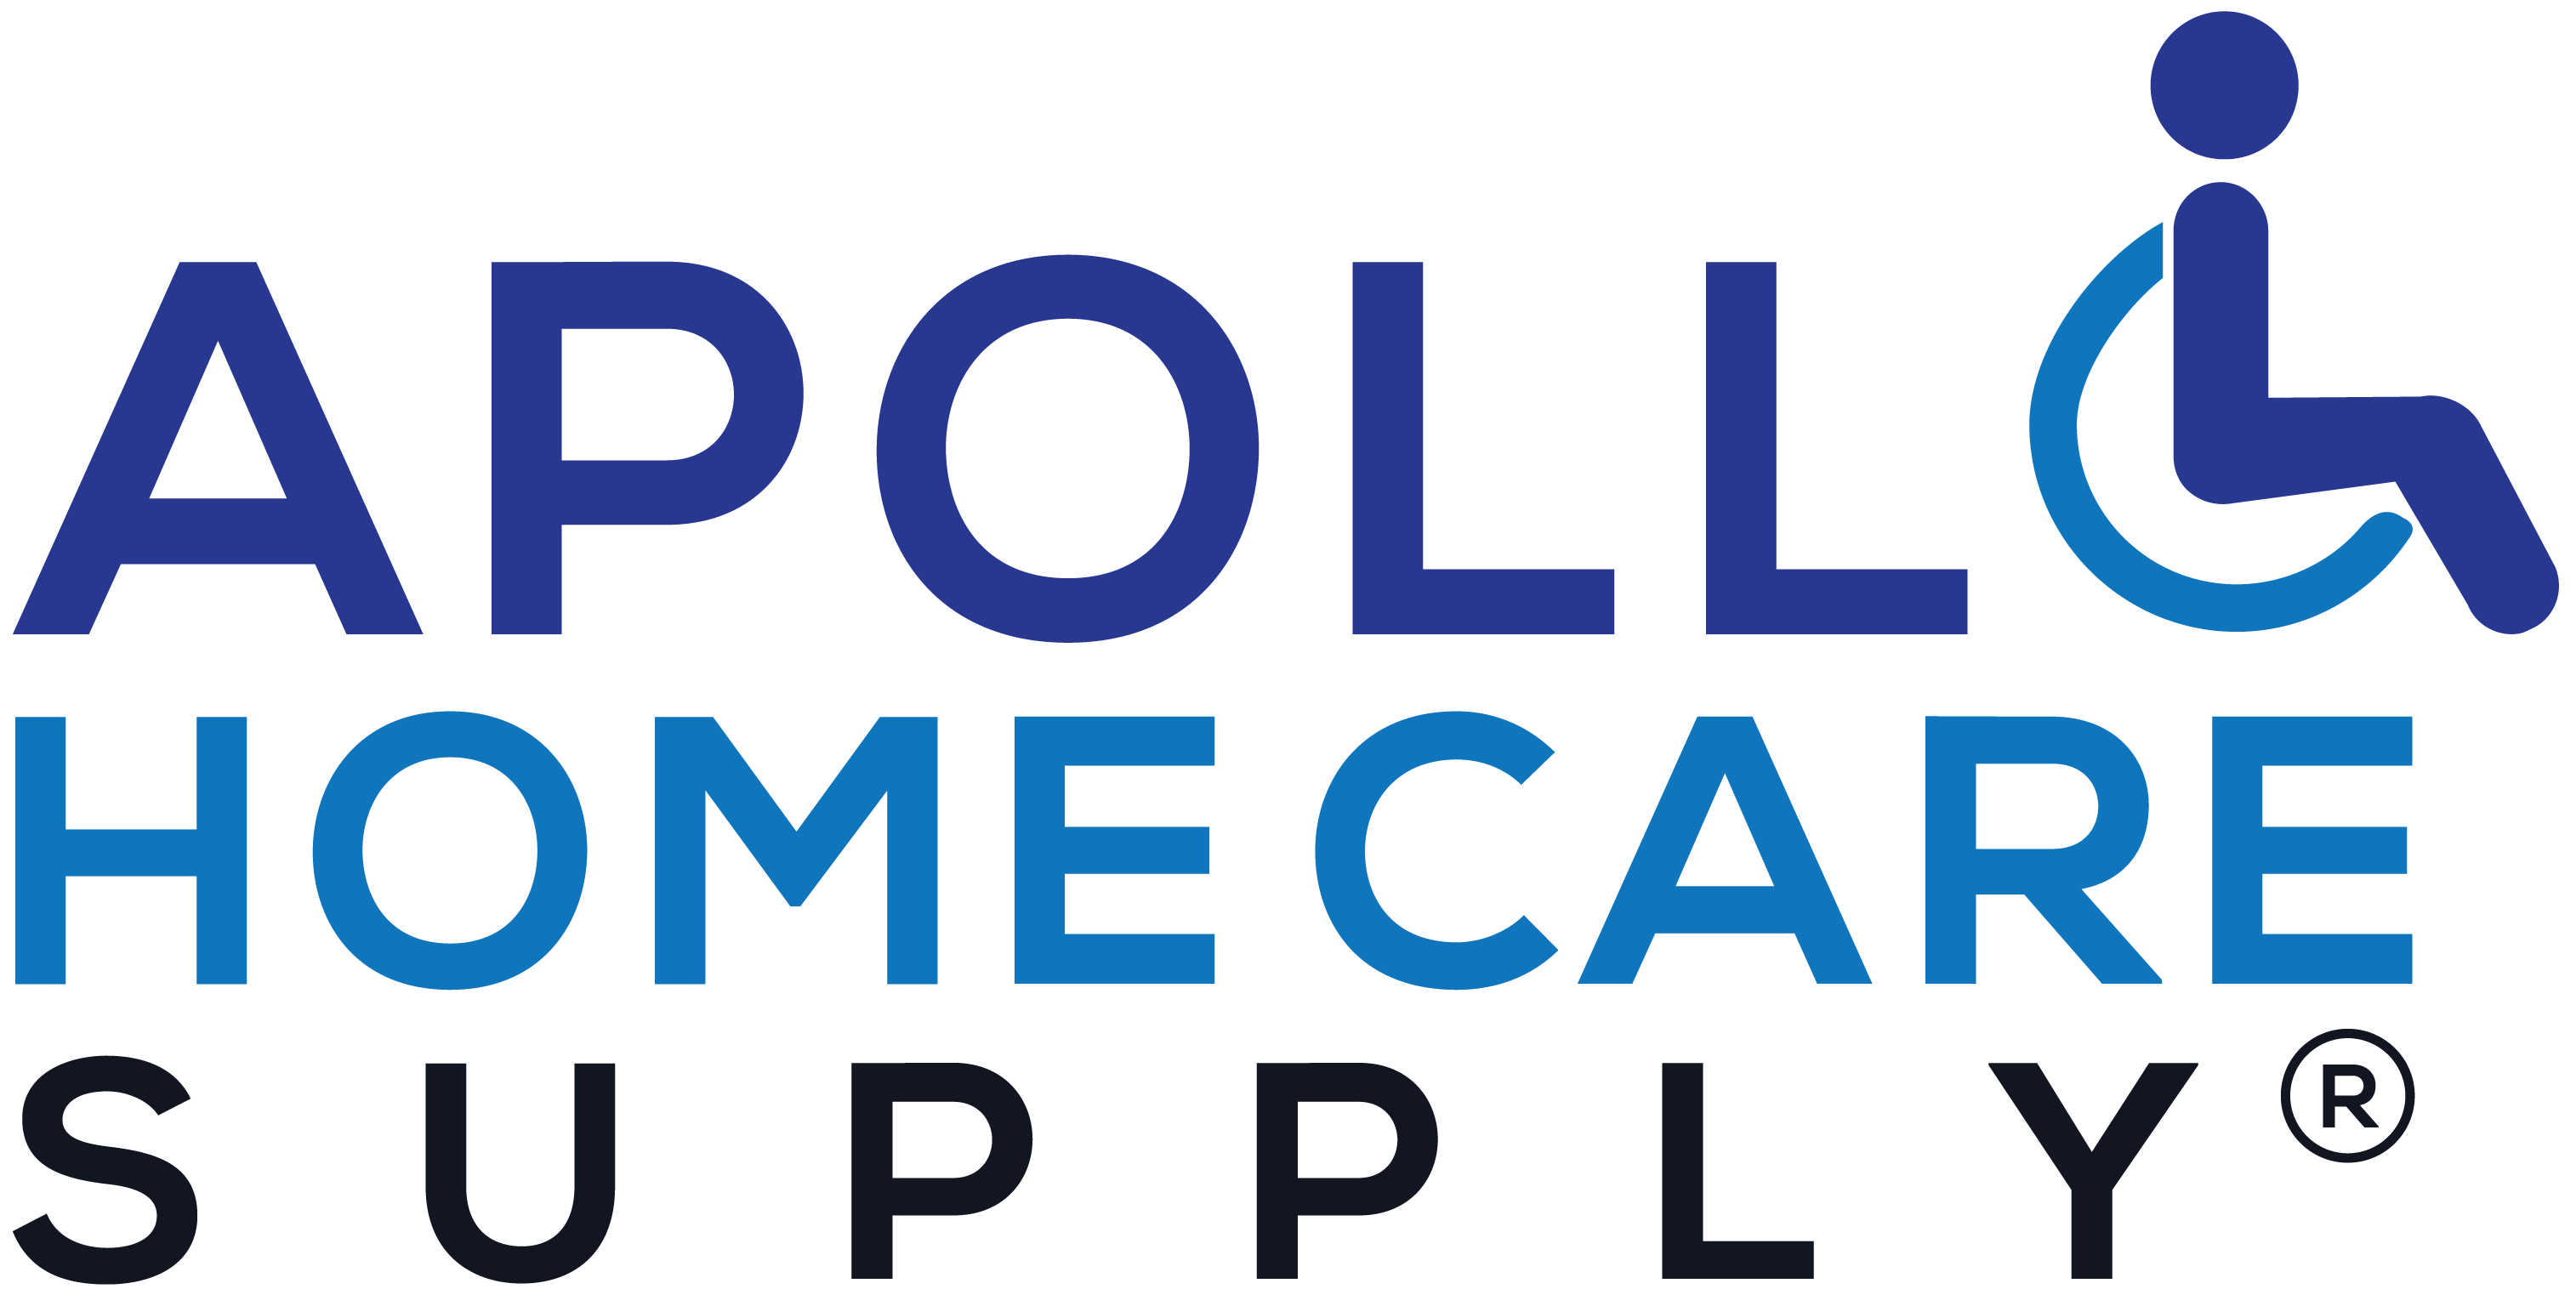 Apollo HomeCare Supply